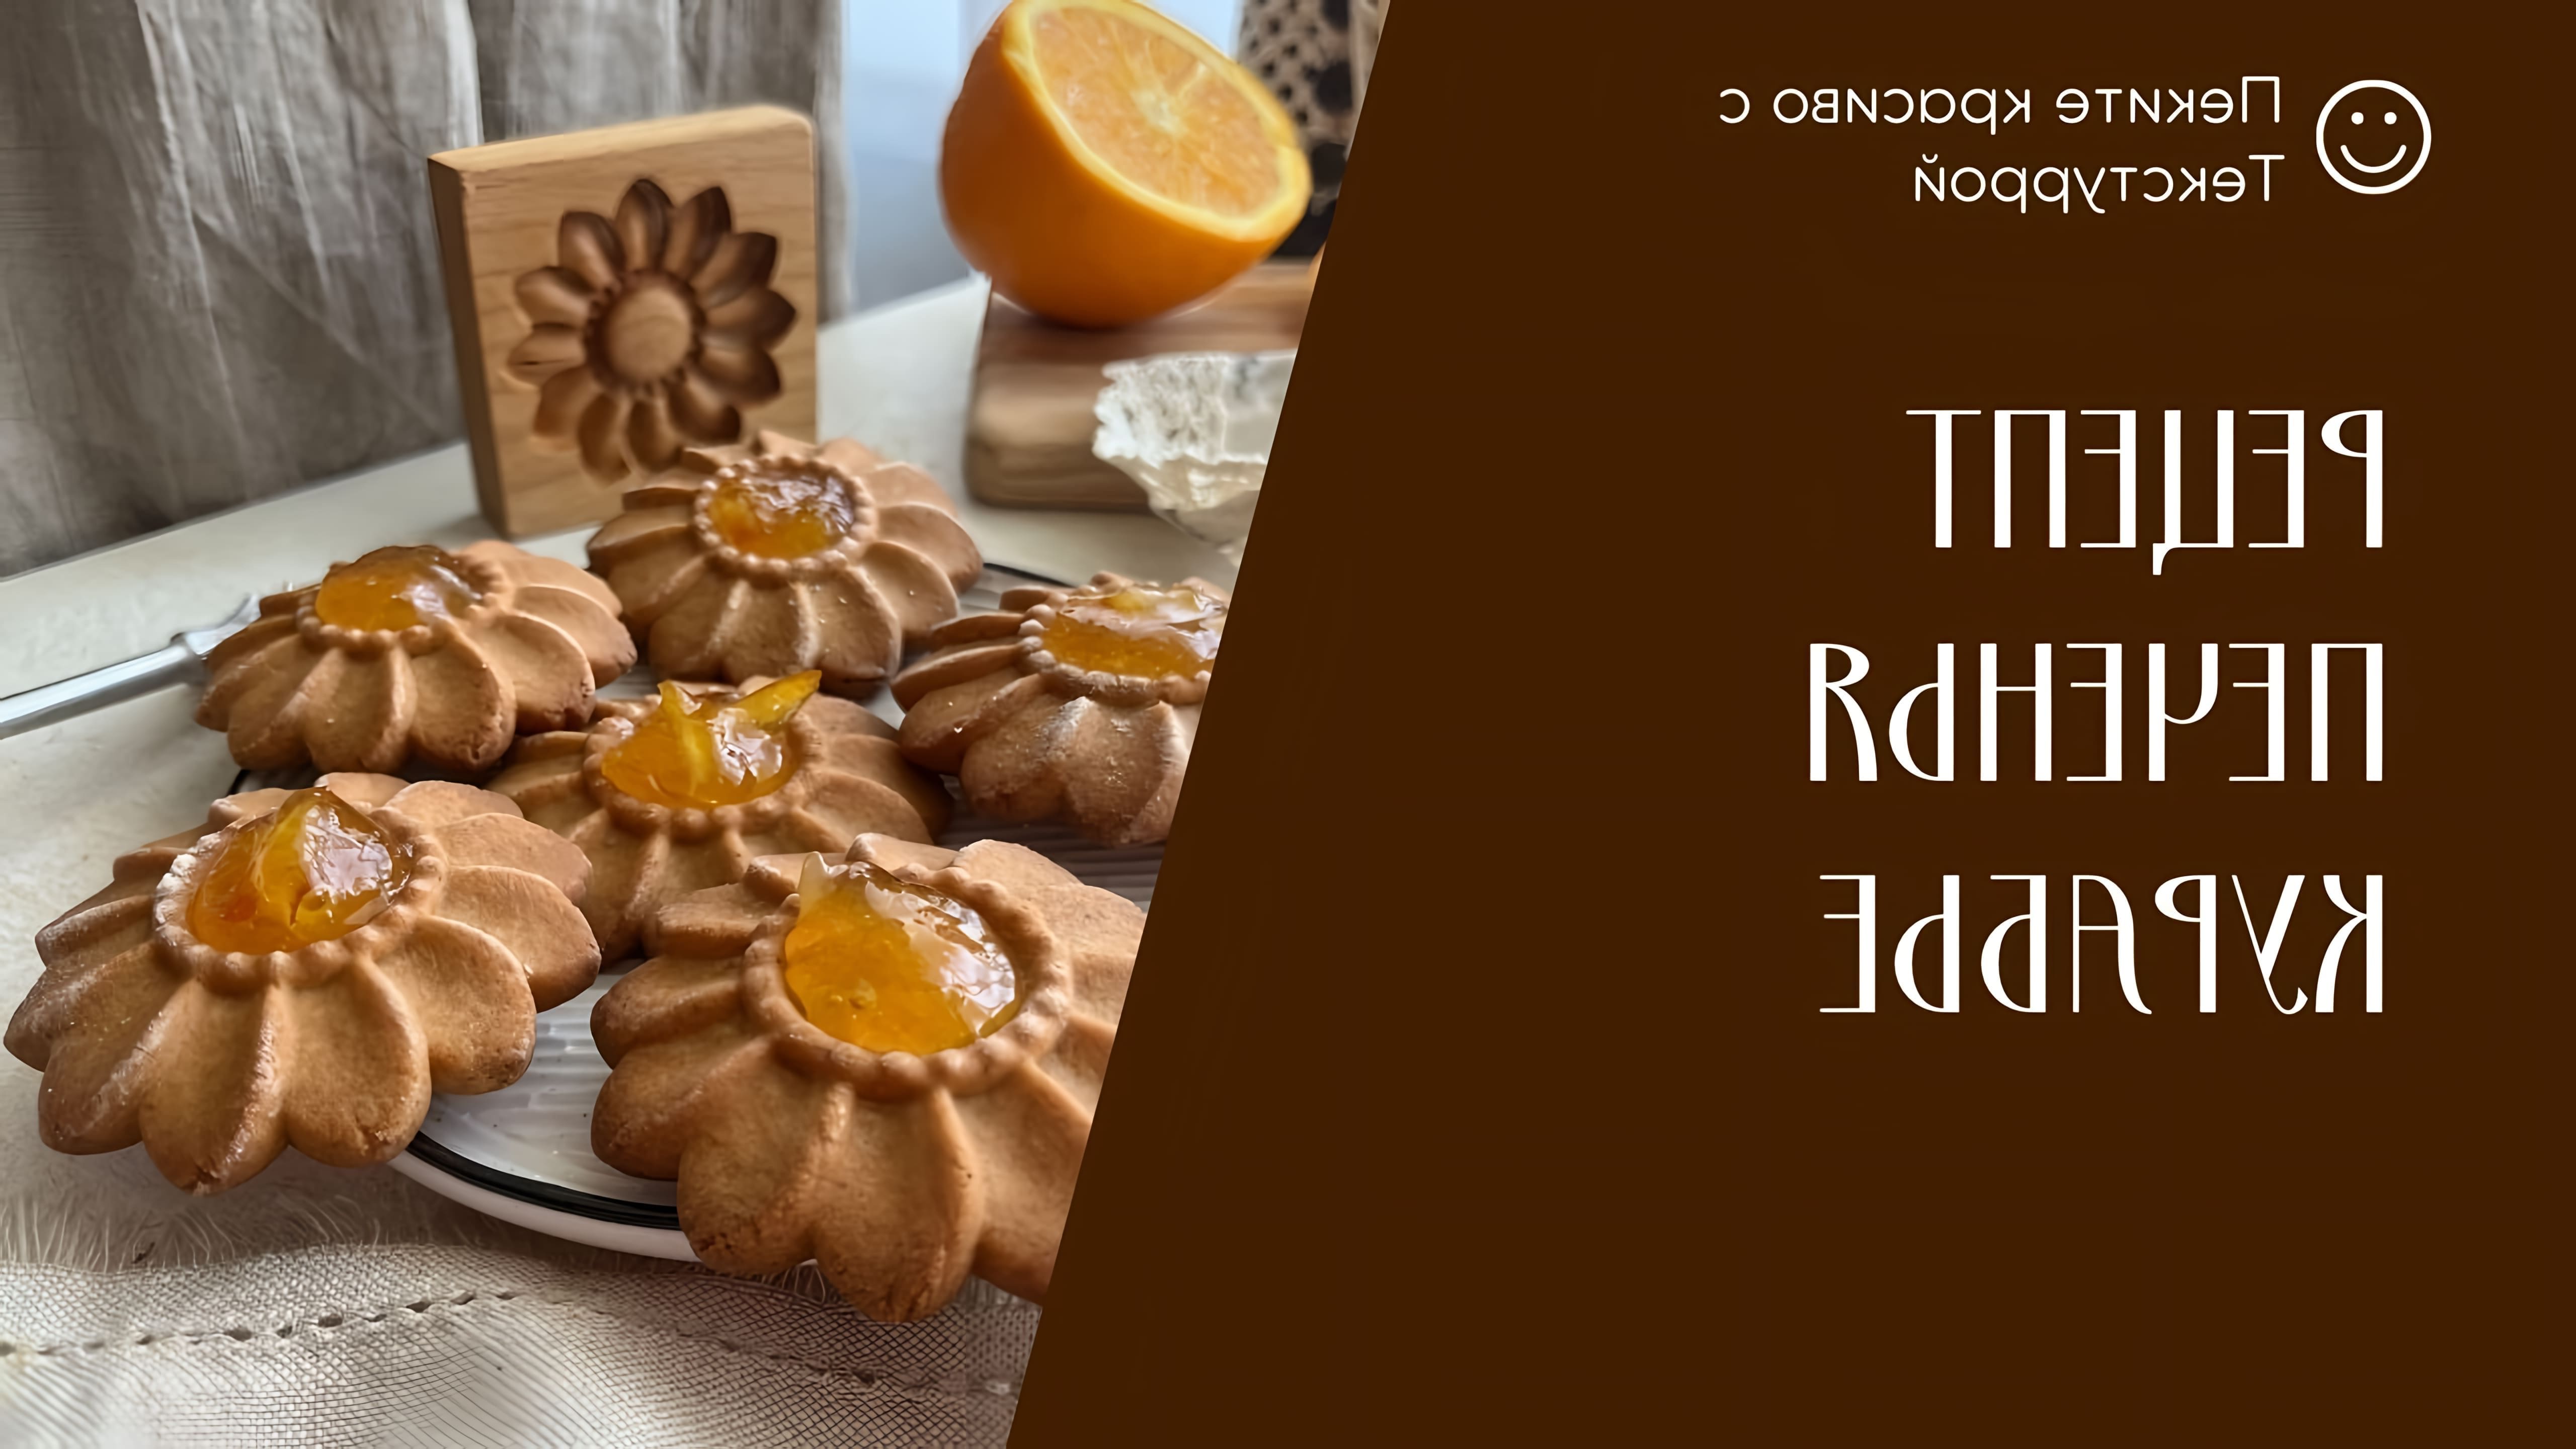 В этом видео демонстрируется рецепт приготовления печенья Курабье в домашних условиях с использованием деревянных форм и текстуры